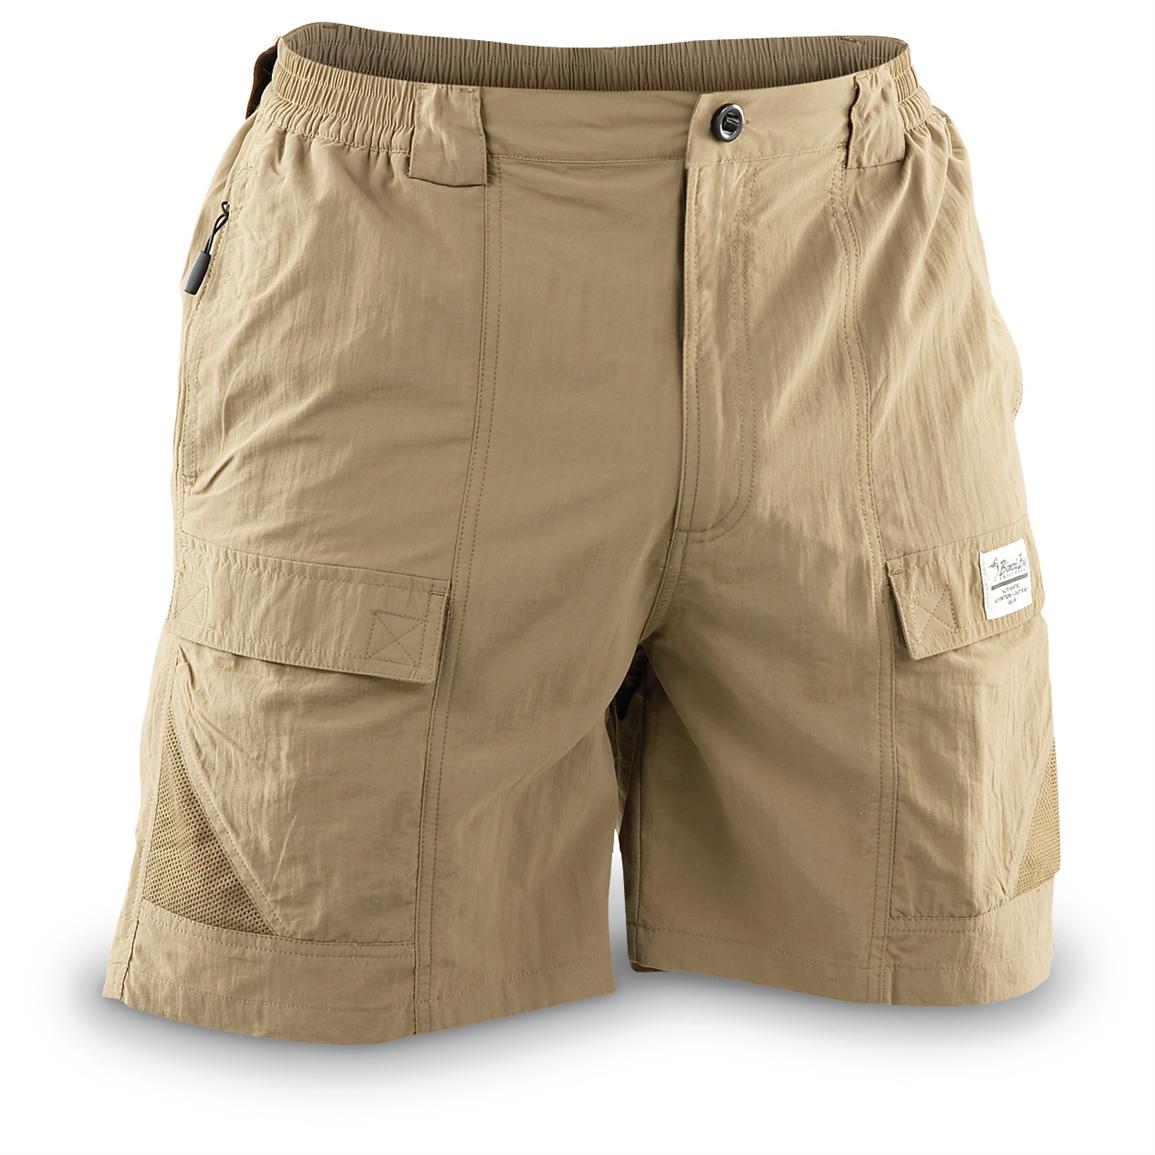 Bimini Bay® Grand Cayman Shorts - 156064, Shorts at Sportsman's Guide